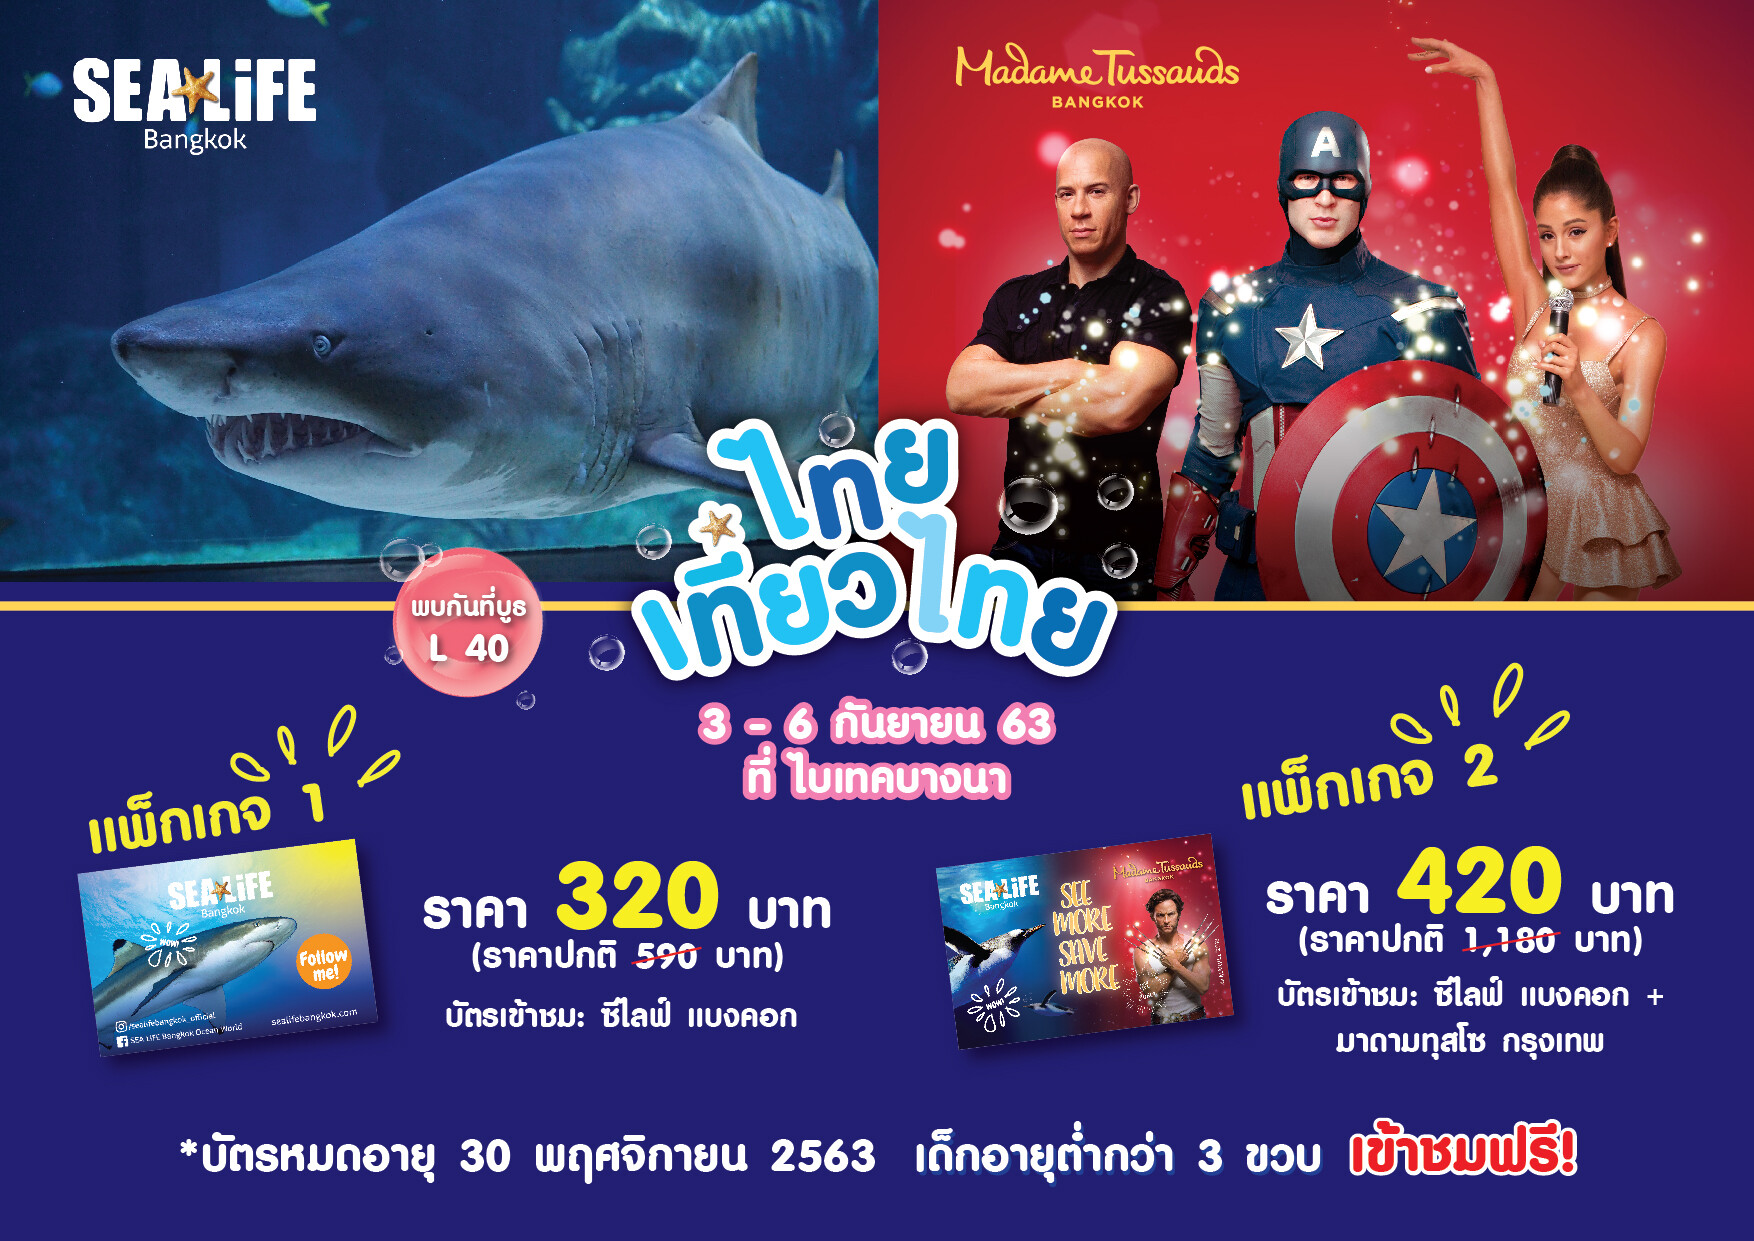 ซีไลฟ์ แบงคอก ชวนไทยเที่ยวไทย เสิร์ฟโปรสุดปังลดกระหน่ำมากกว่า 50% เที่ยวยาวได้ถึง 30 พฤศจิกายน 2563 ในงาน 'ไทยเที่ยวไทย ครั้งที่ 56’